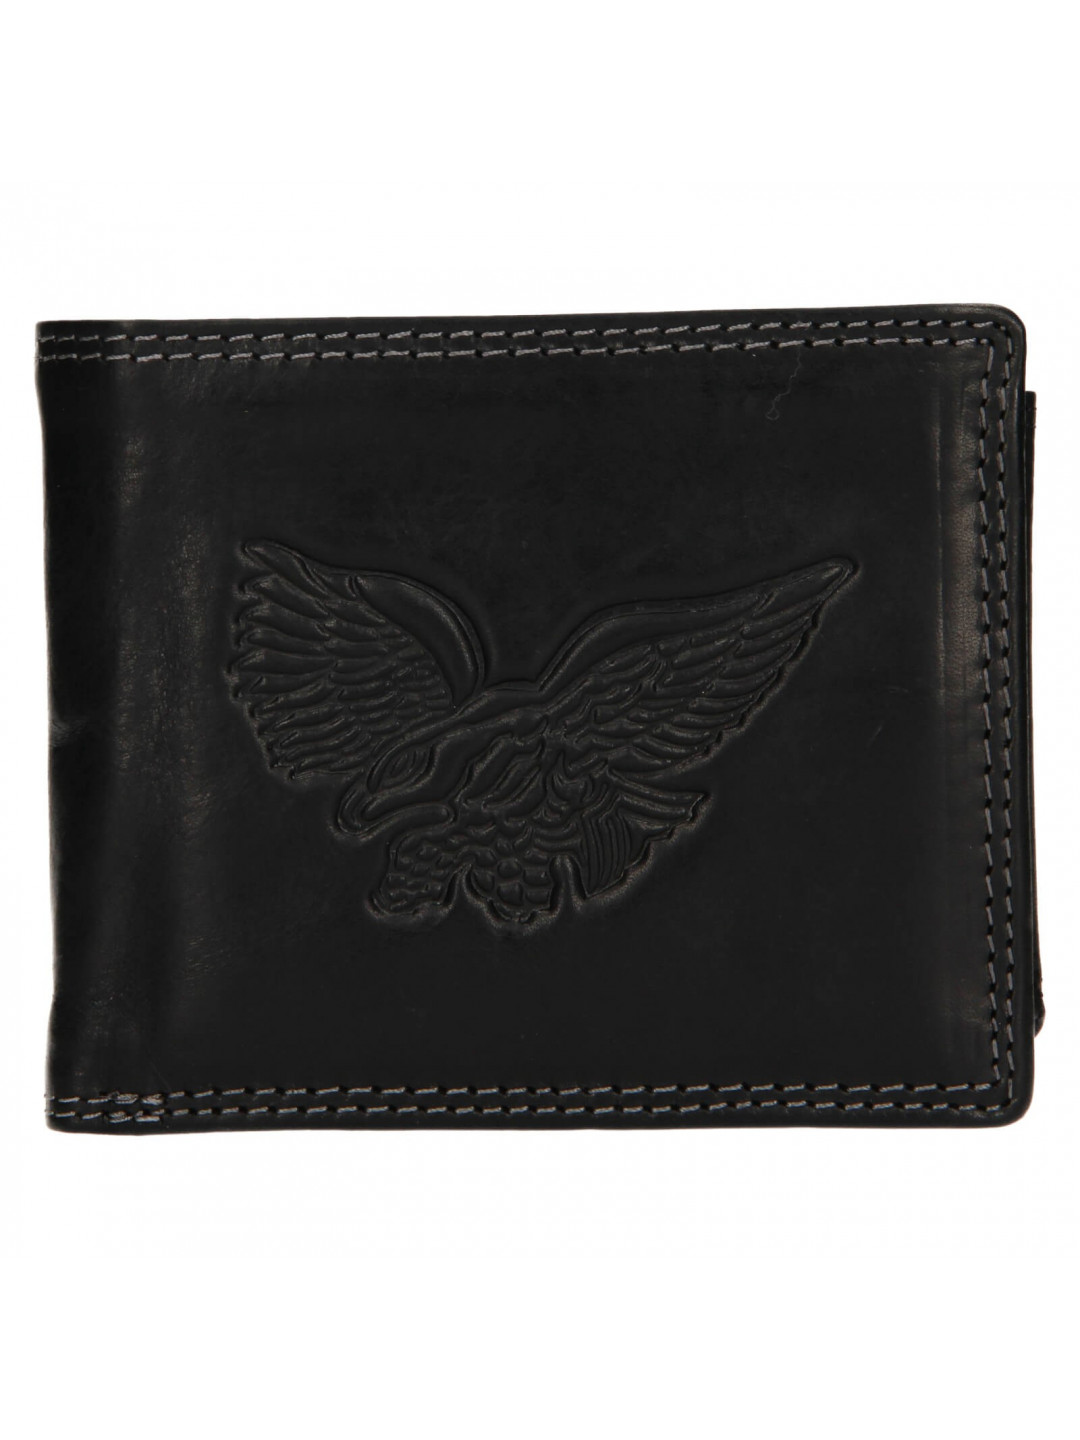 Pánská kožená peněženka SendiDesign Eagle – černá